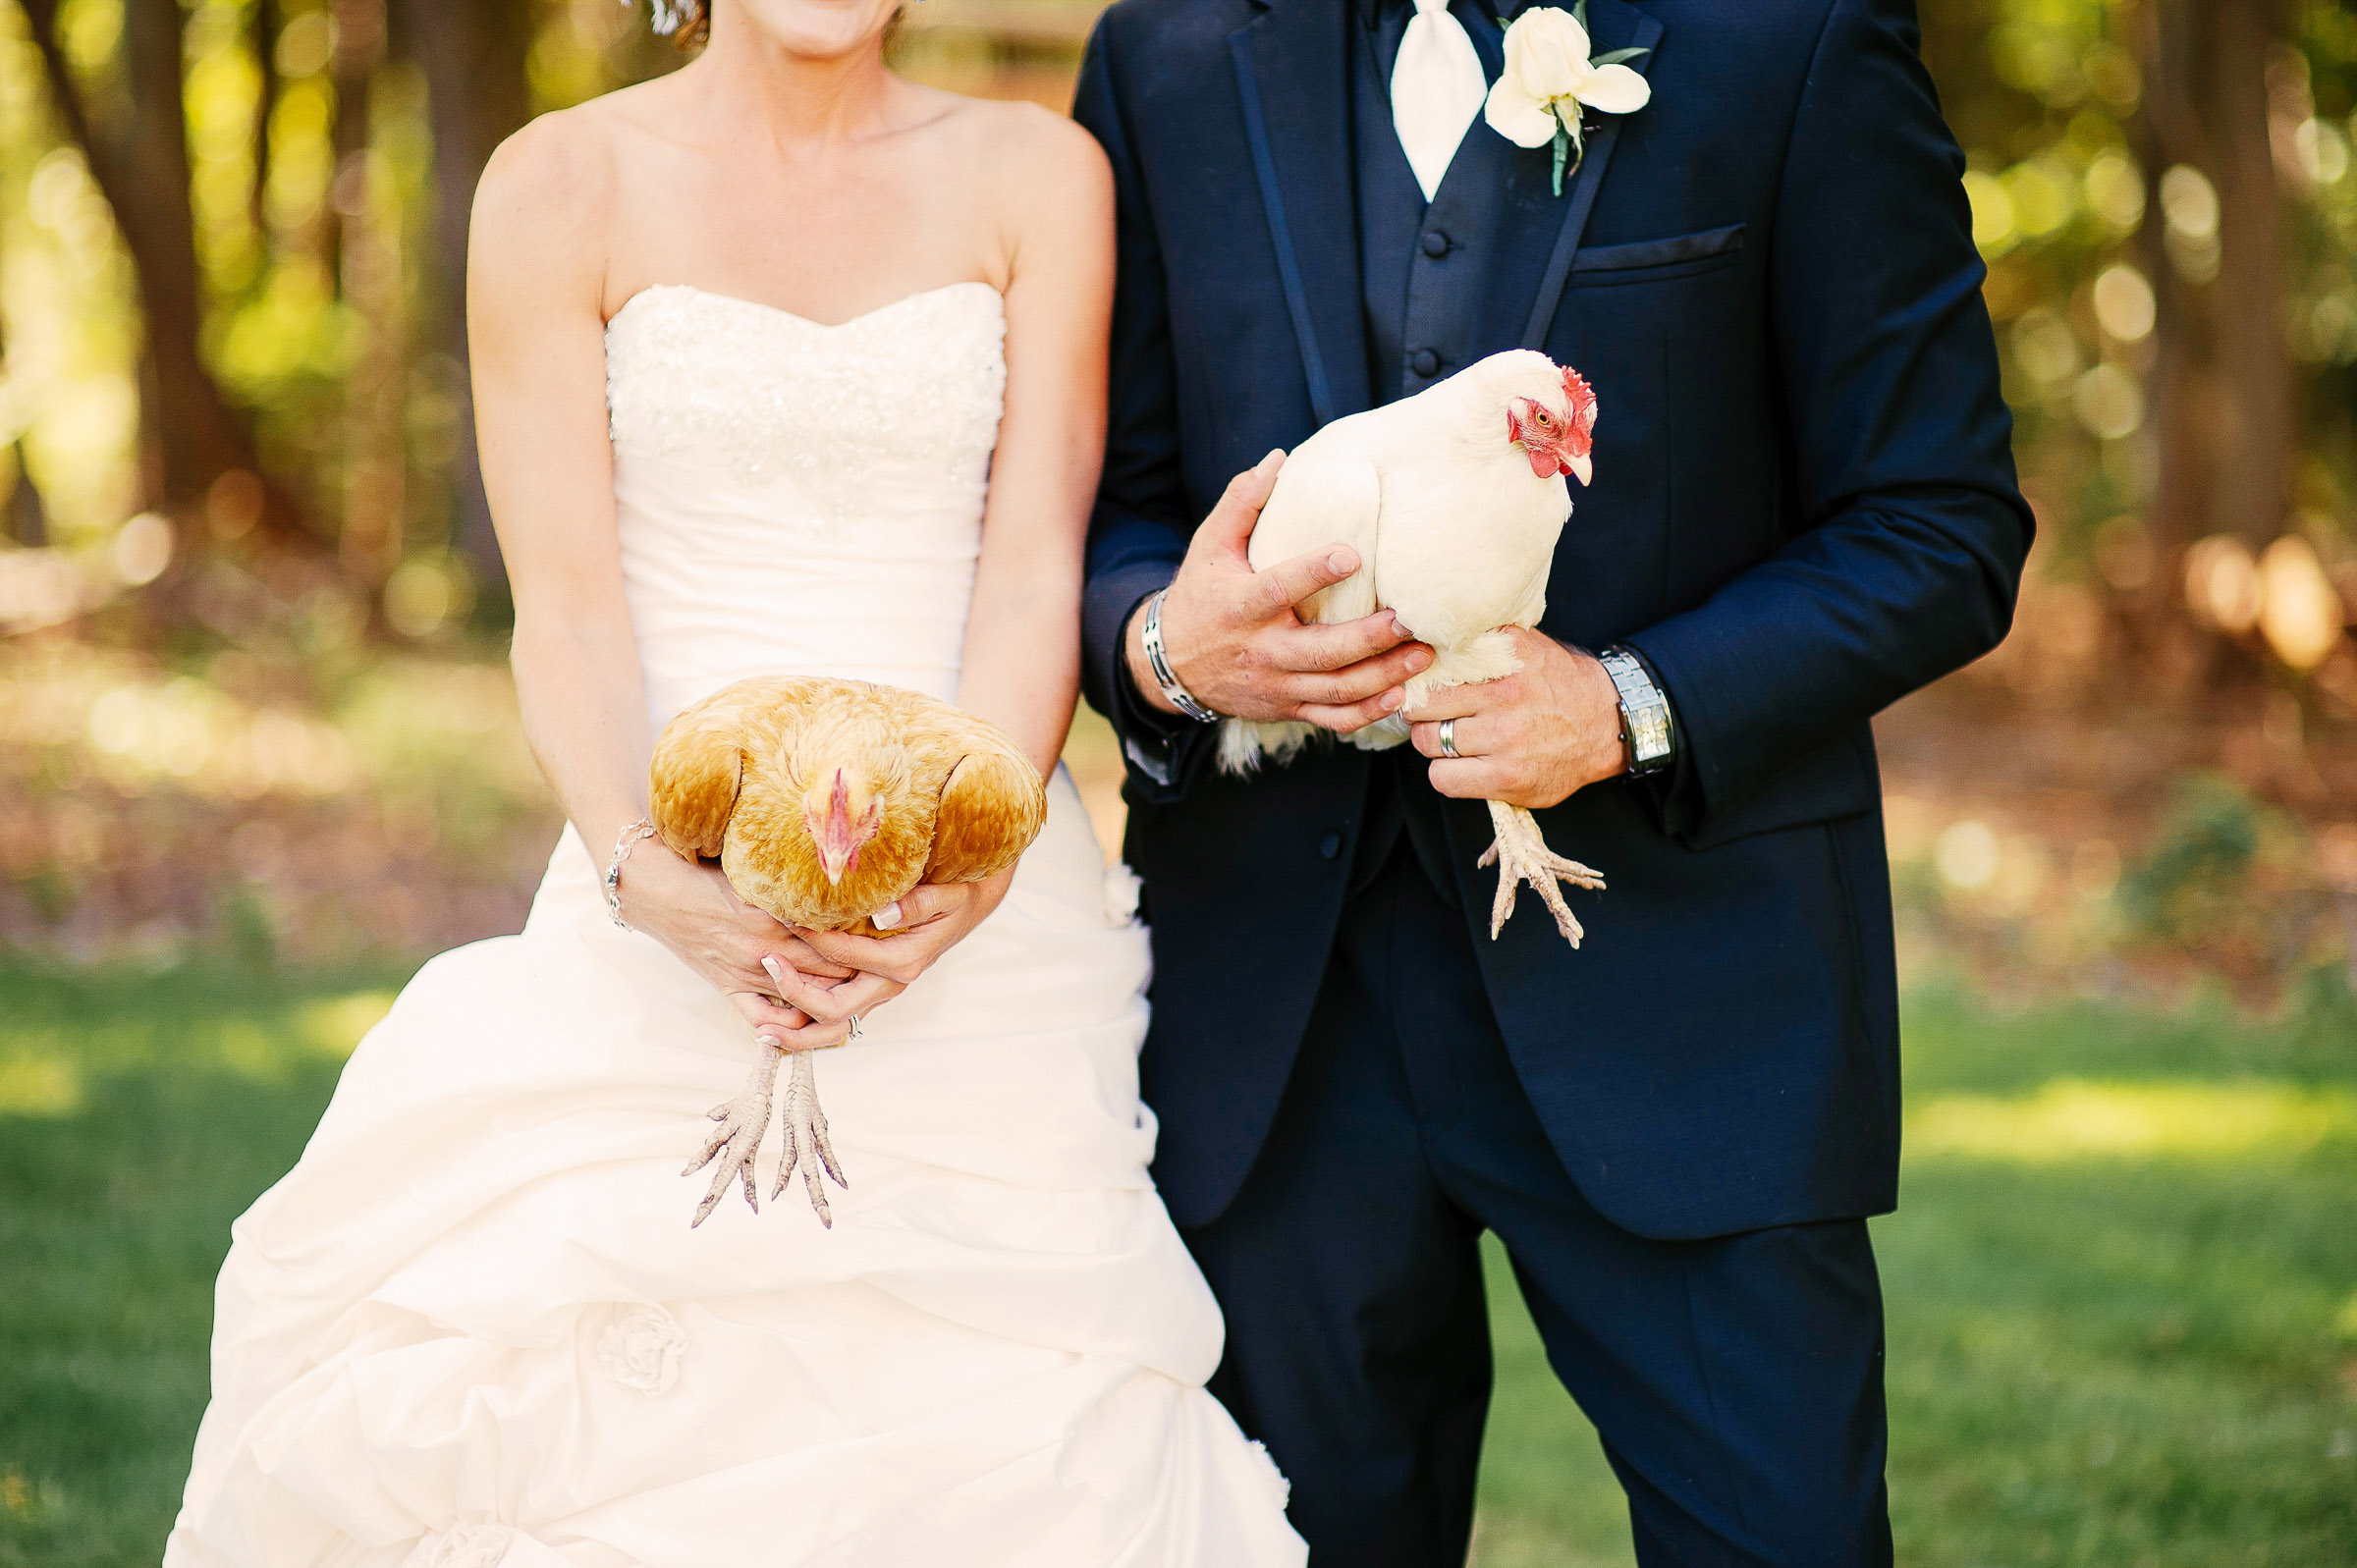 Farm wedding